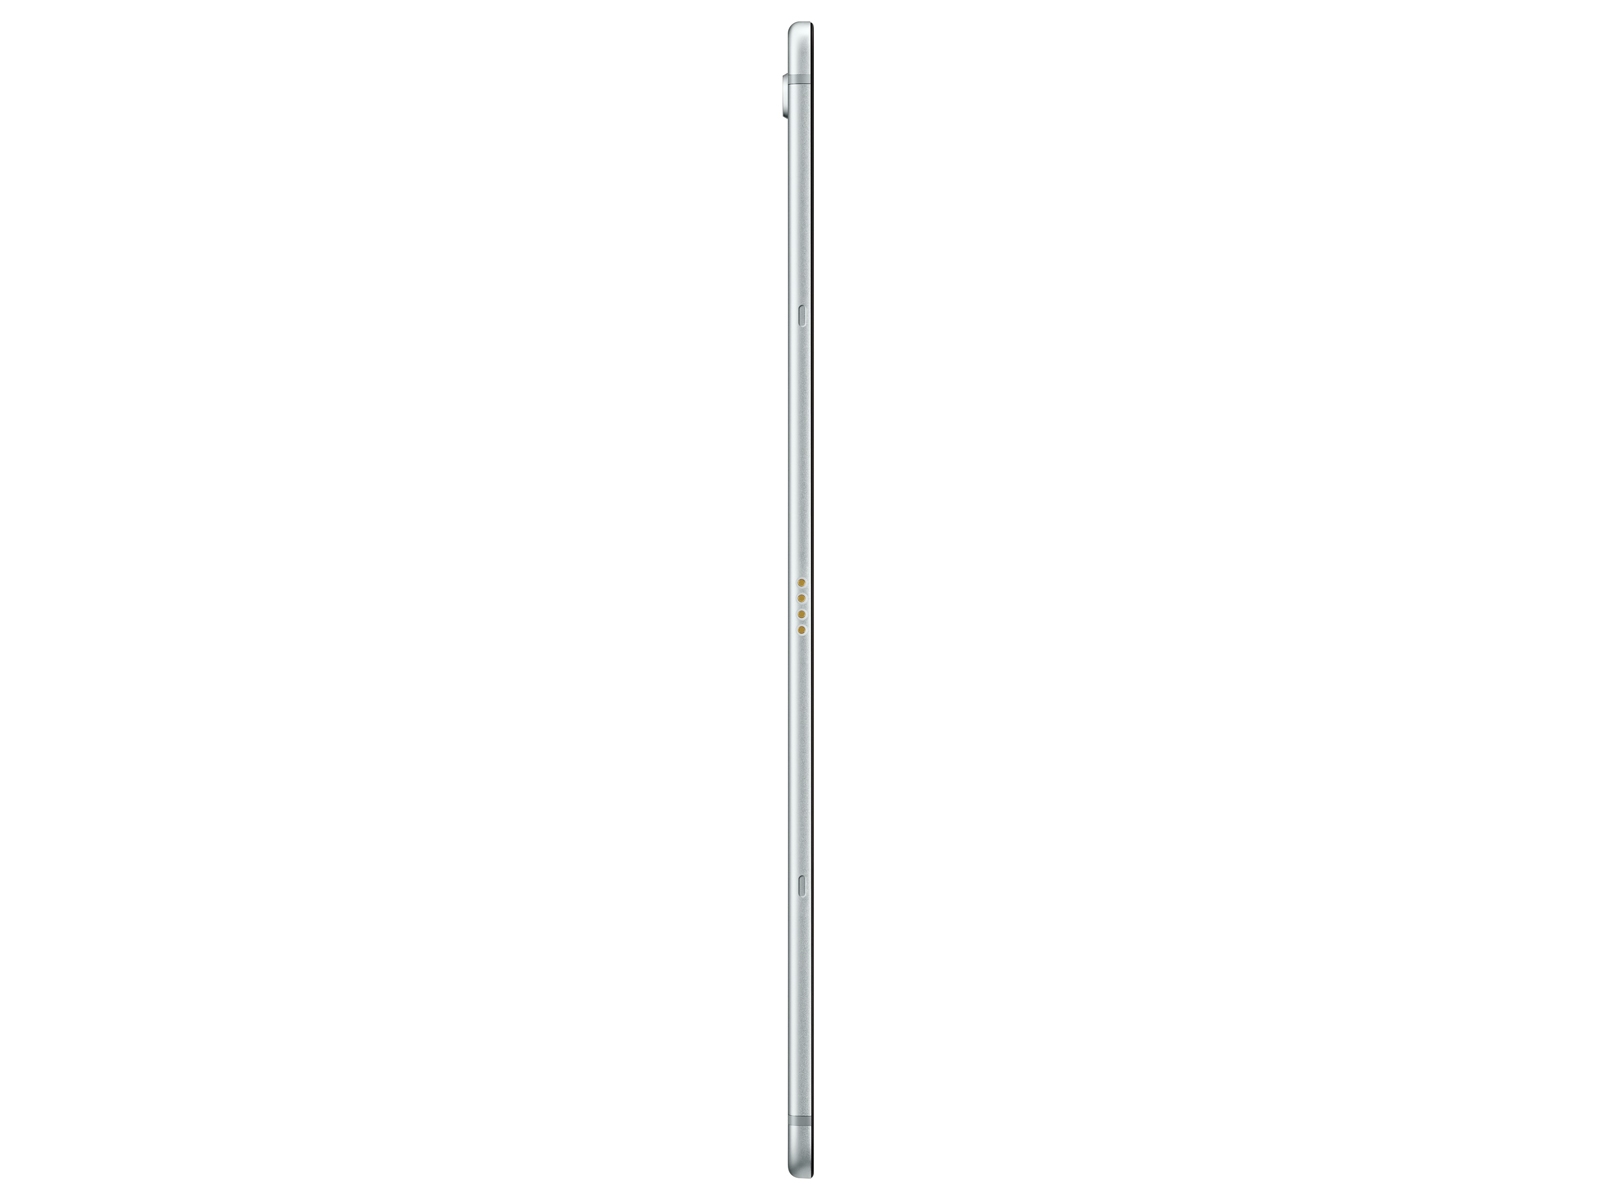 Galaxy Tab S5e 10.5, 64GB, Silver (Wi-Fi) Tablets - SM-T720NZSAXAR